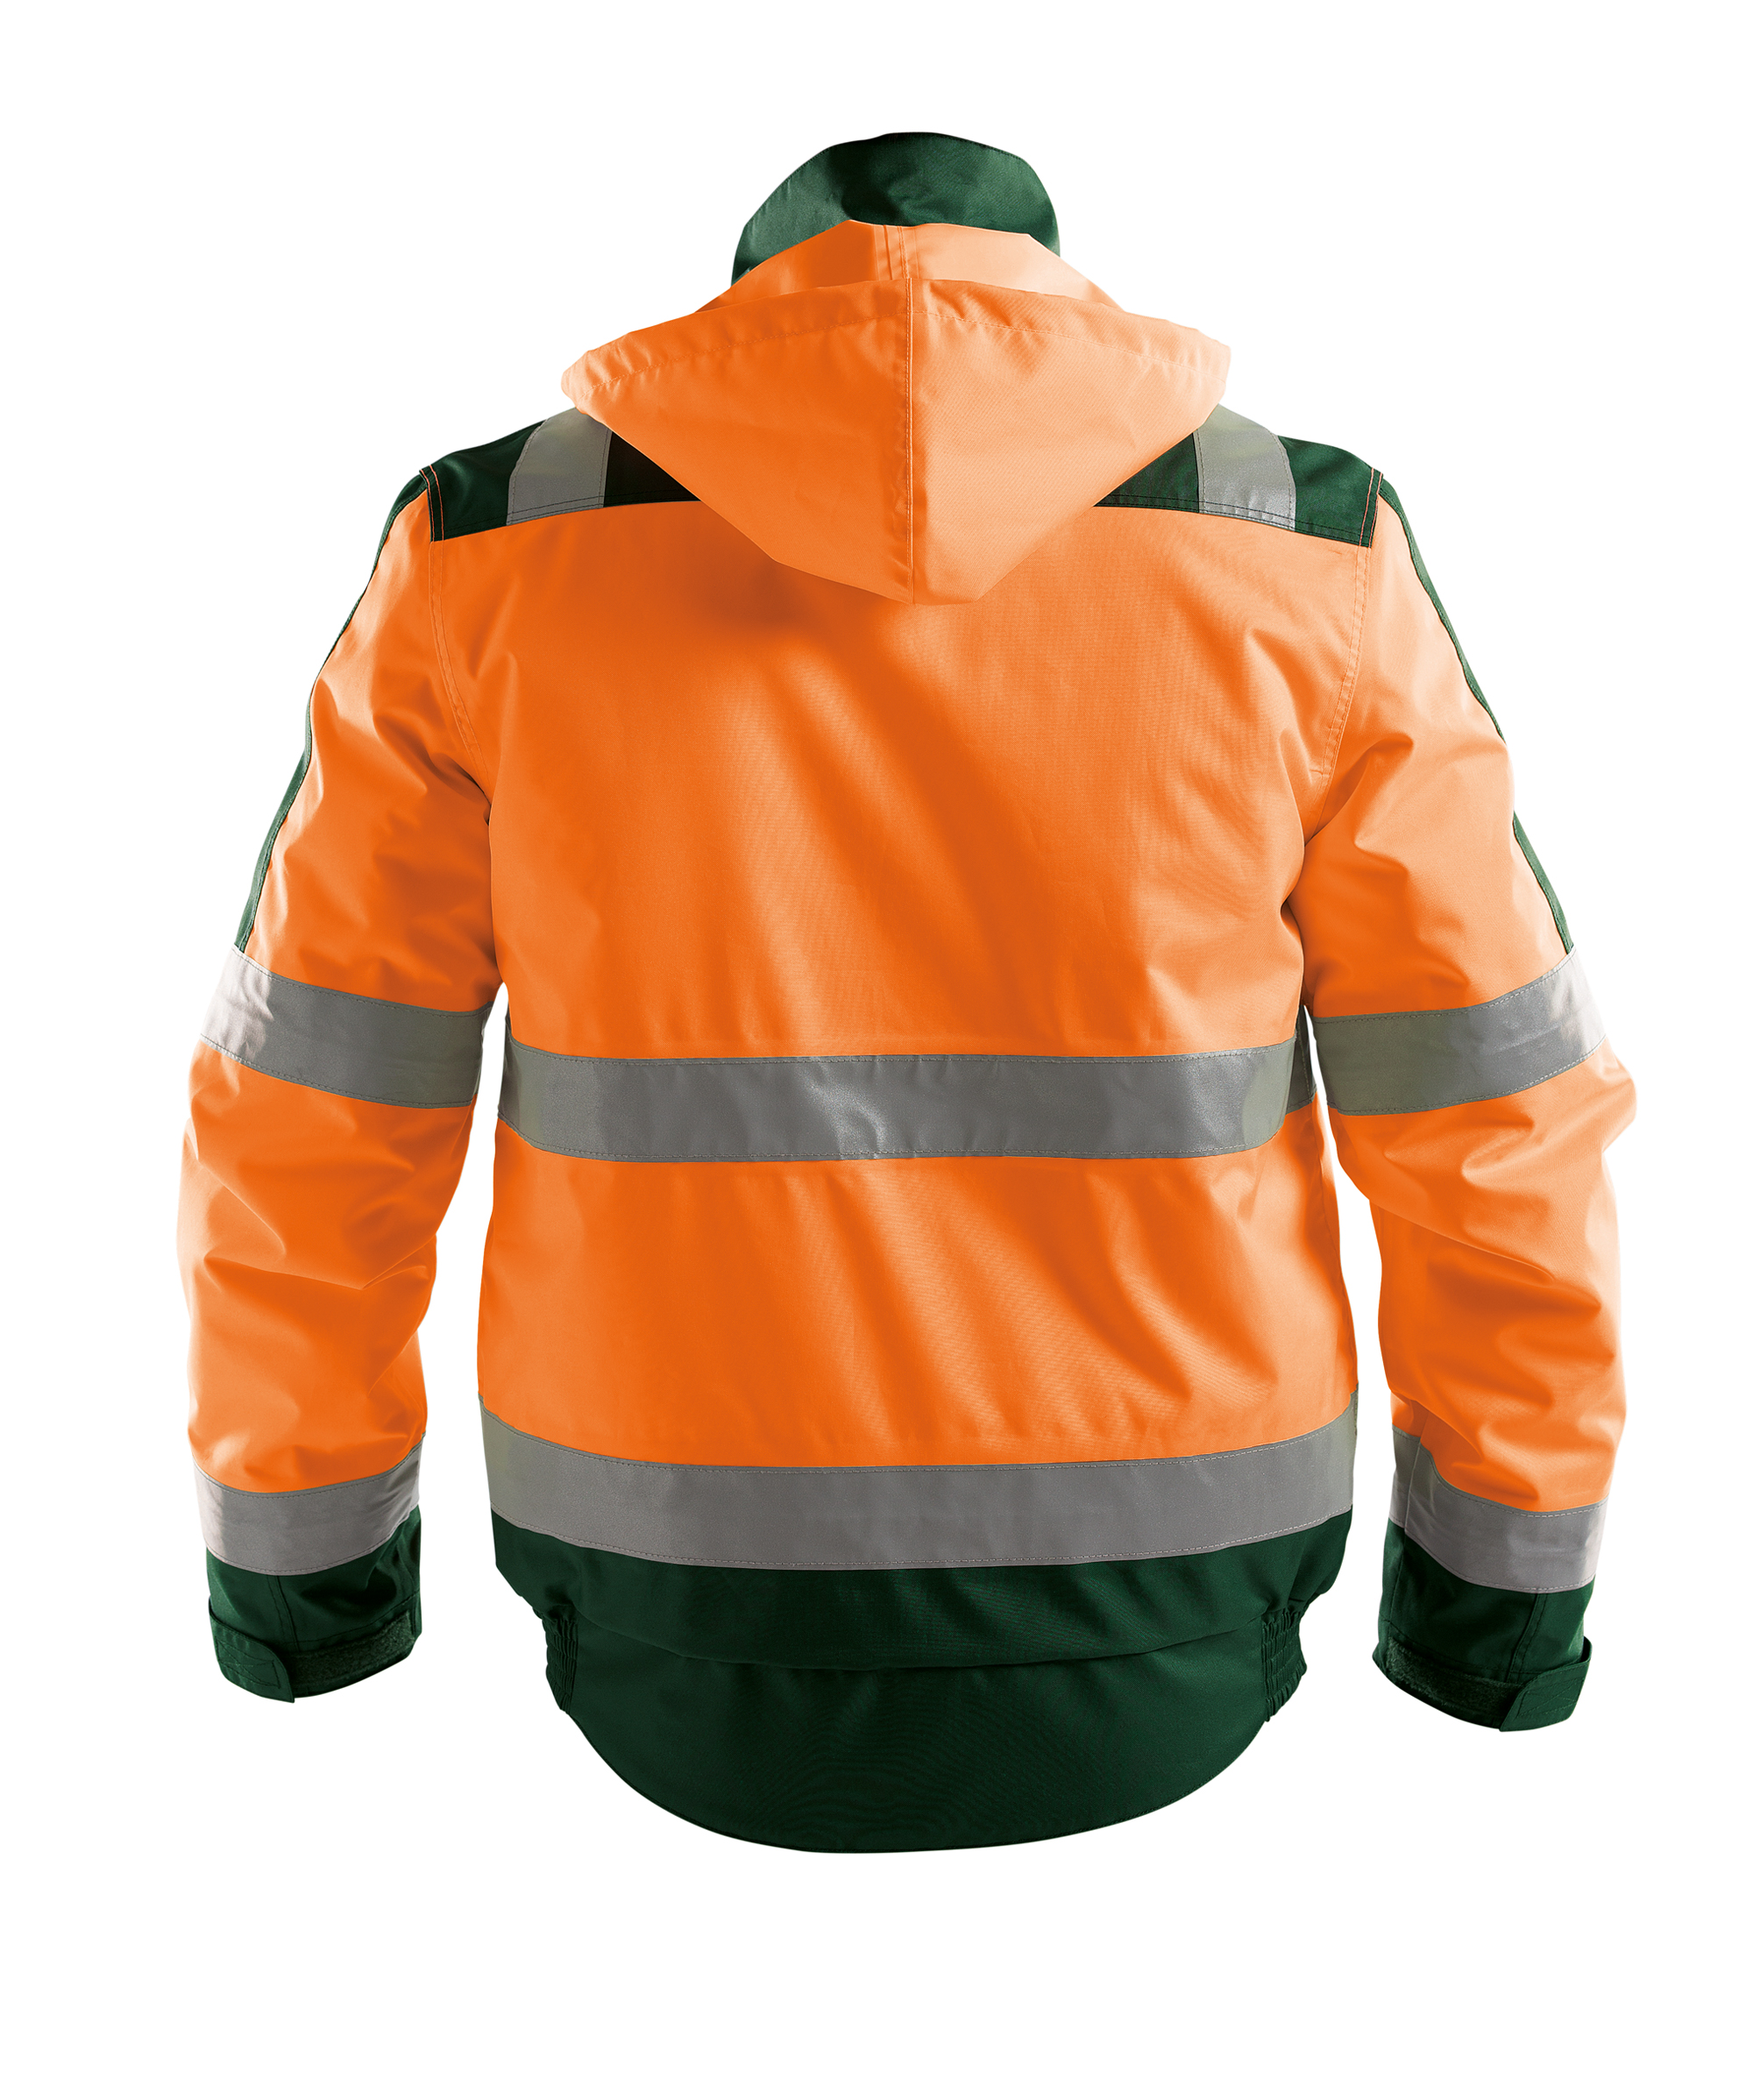 lima_high-visibility-winter-jacket_fluo-orange-bottle-green_back.jpg